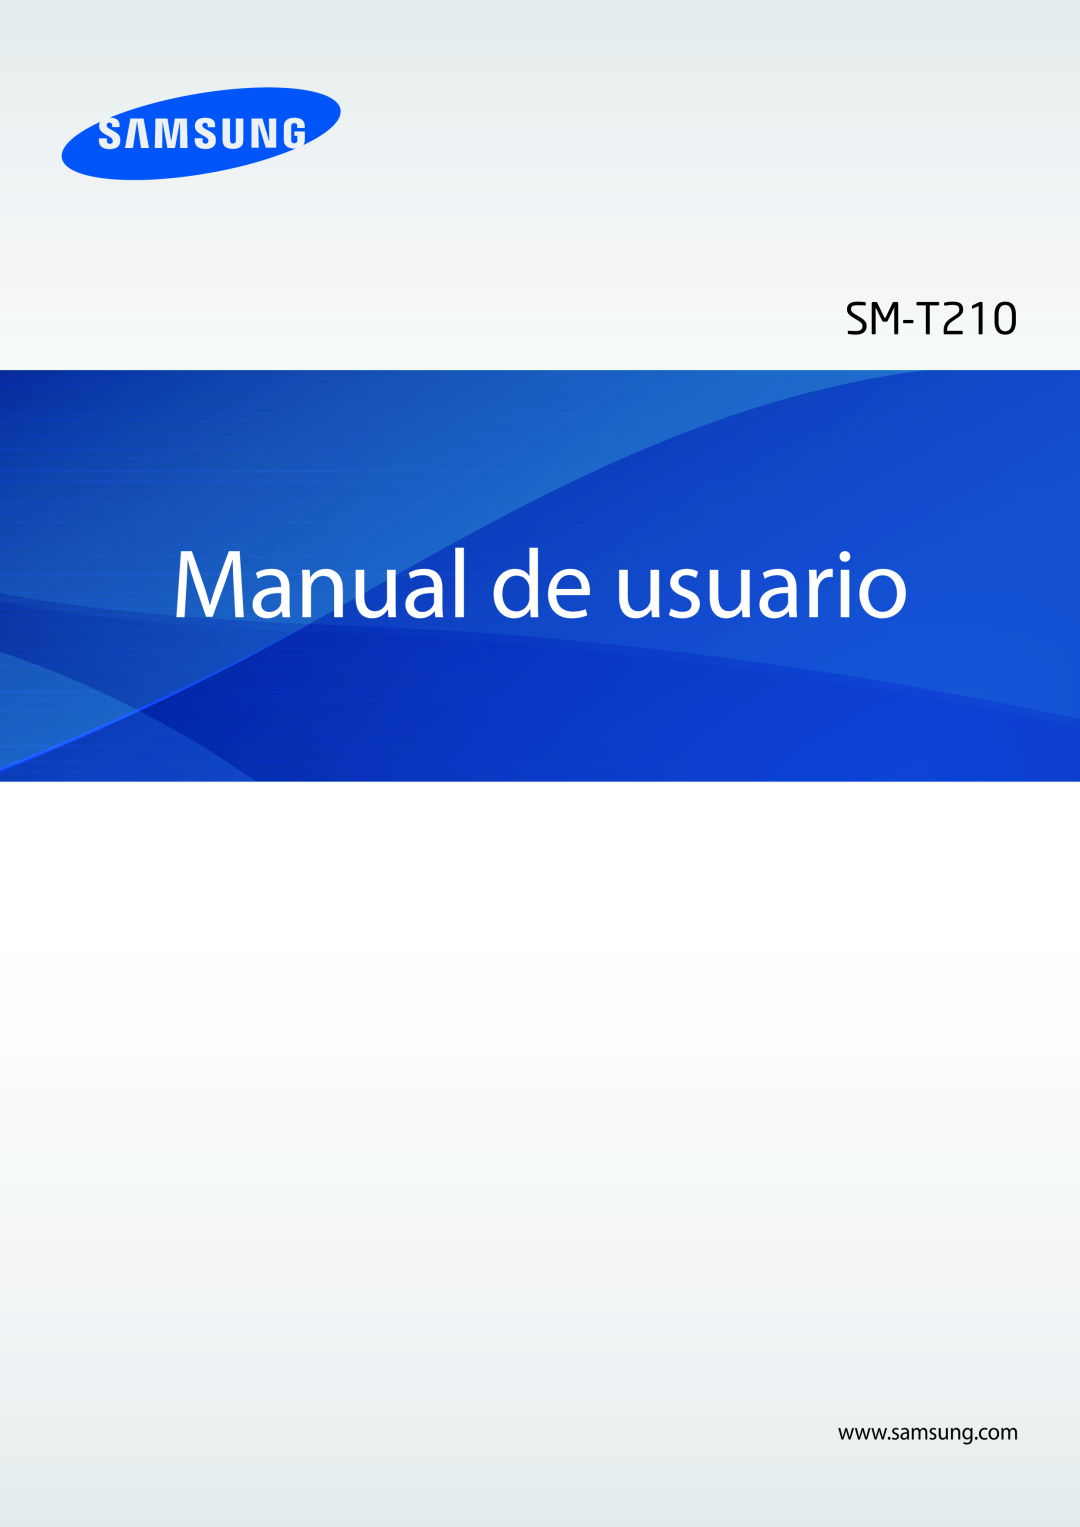 Samsung SM-T2100ZWAXEO, SM-T2100MKADBT, SM-T2100ZWATPH, SM-T2100MKATPH, SM-T2100ZWAXET manual Manual de usuario 